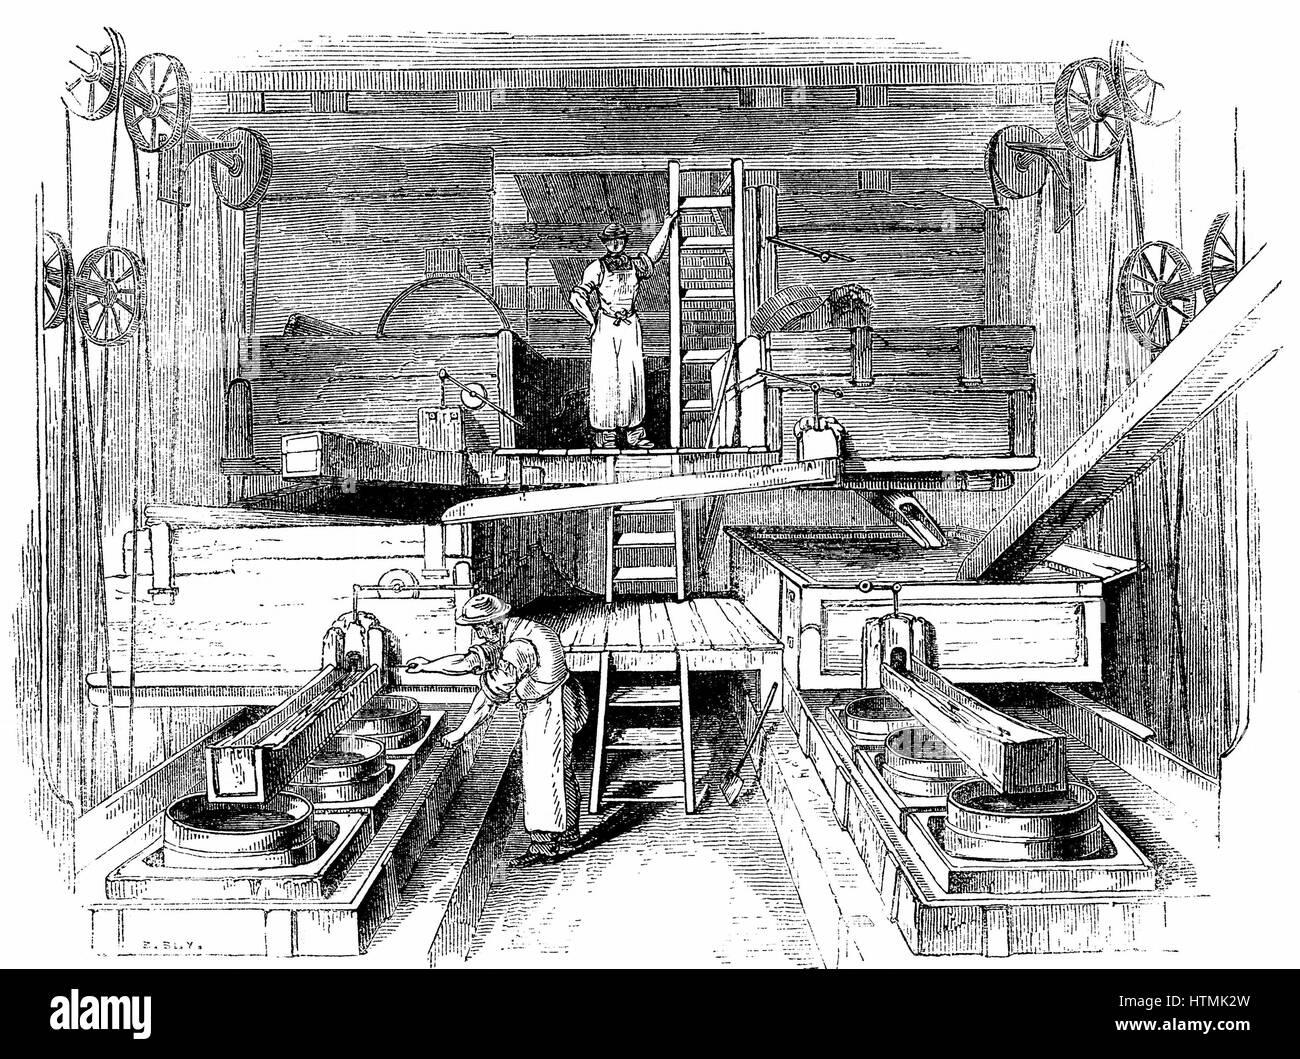 Macinazione e miscelazione ingredienti per la produzione di ceramiche in camera mulino di una fabbrica di Staffordshire. Incisione su legno c1851 Foto Stock